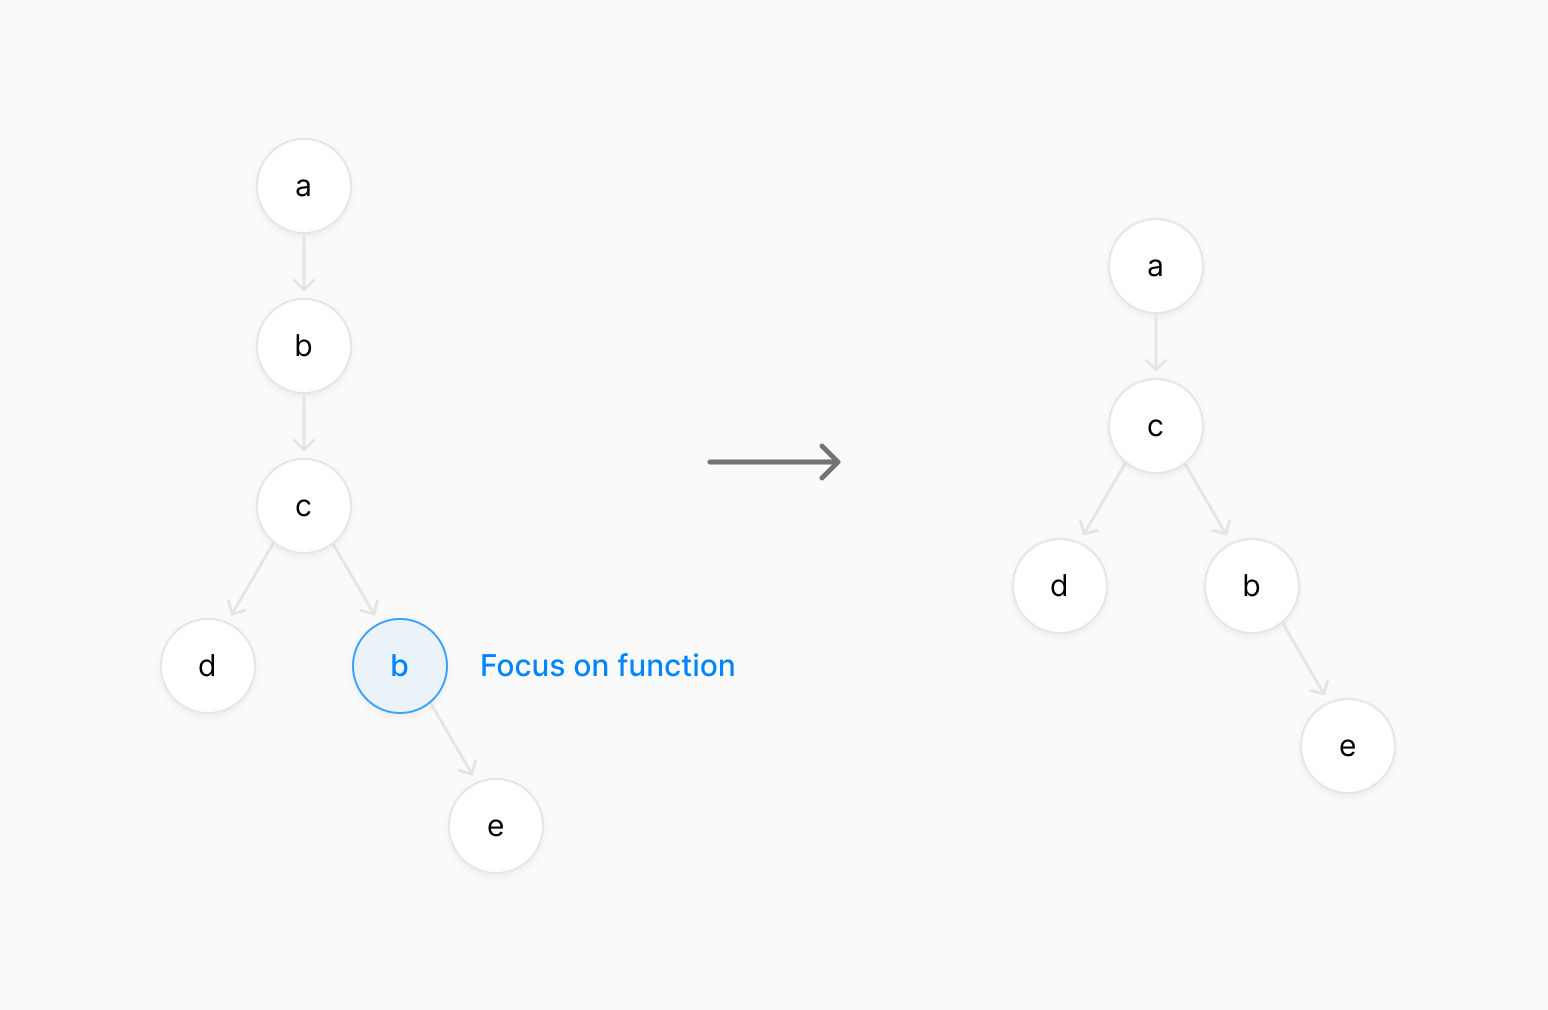 Focus on function diagram